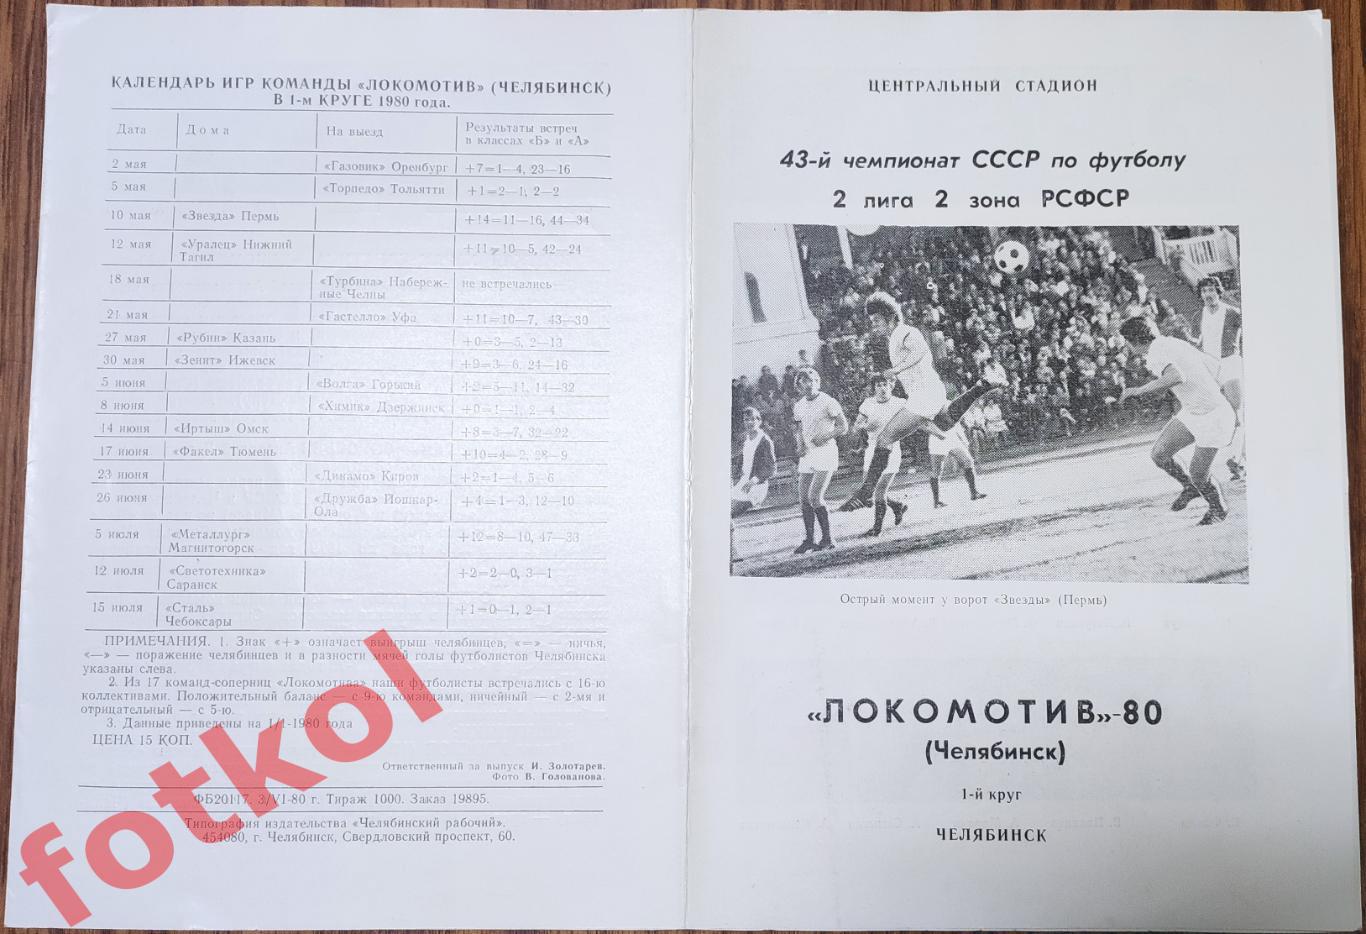 ЧЕЛЯБИНСК Локомотив - 1980 1 круг Фото - Буклет